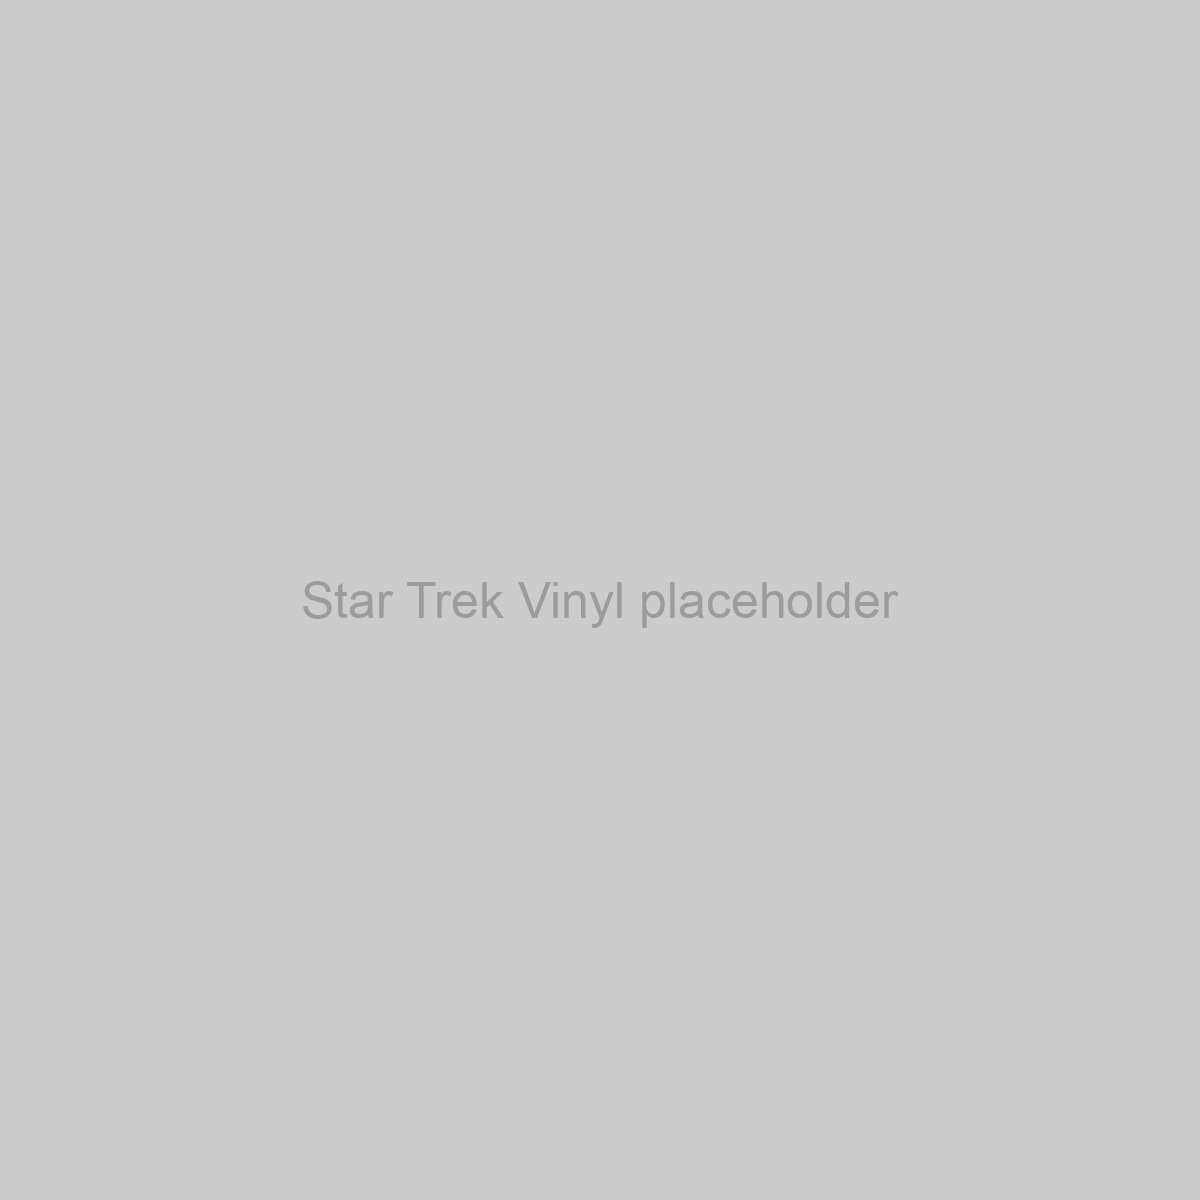 Star Trek Vinyl Placeholder Image